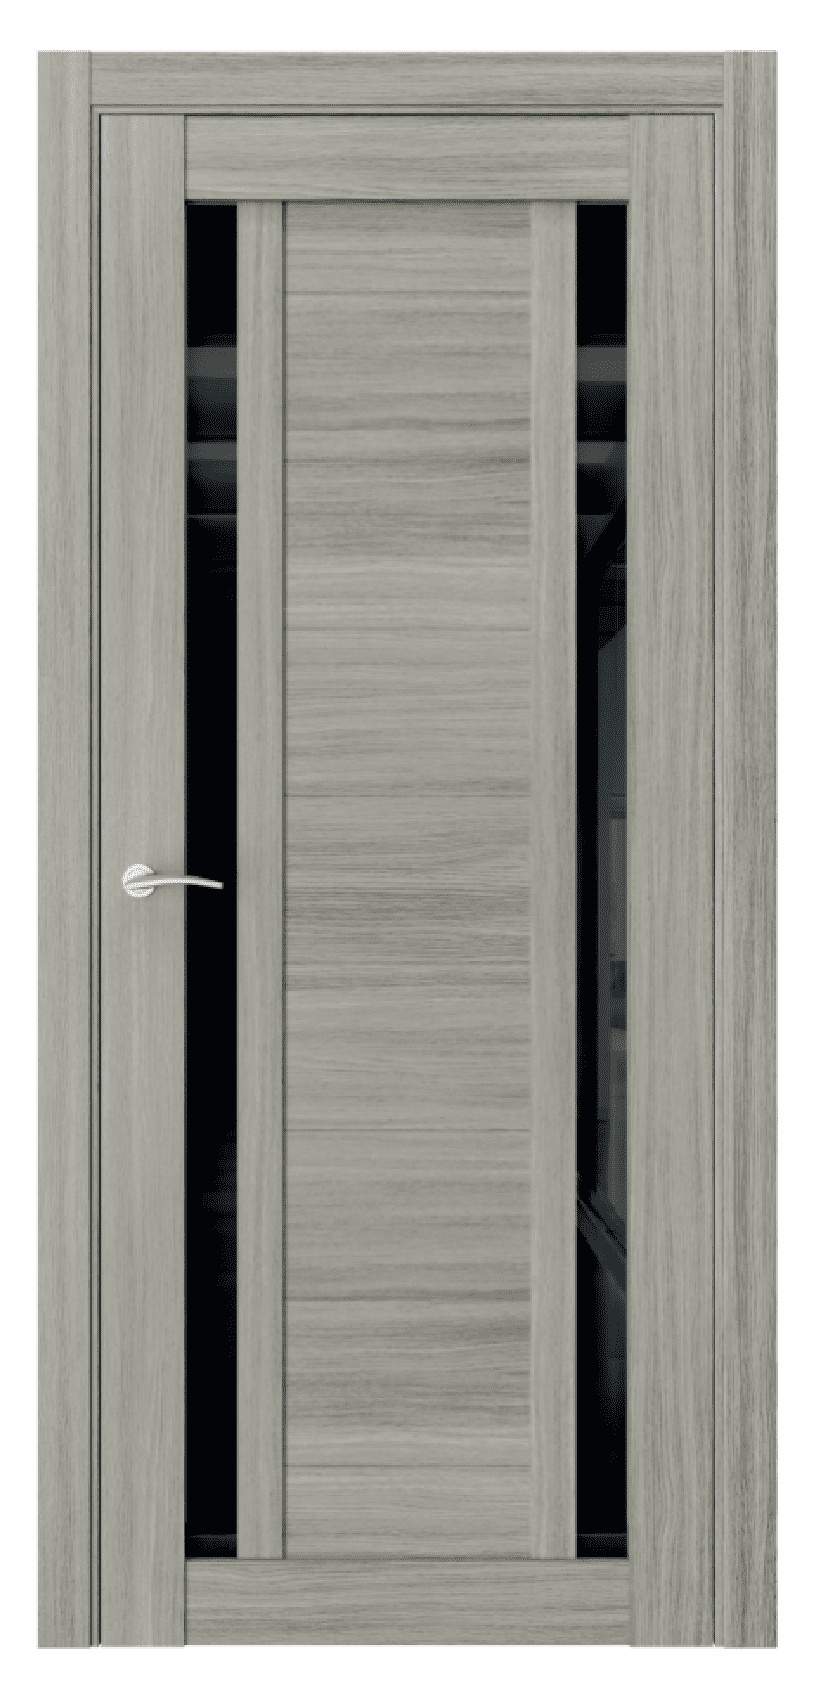 Questdoors Межкомнатная дверь Q3, арт. 17456 - фото №1